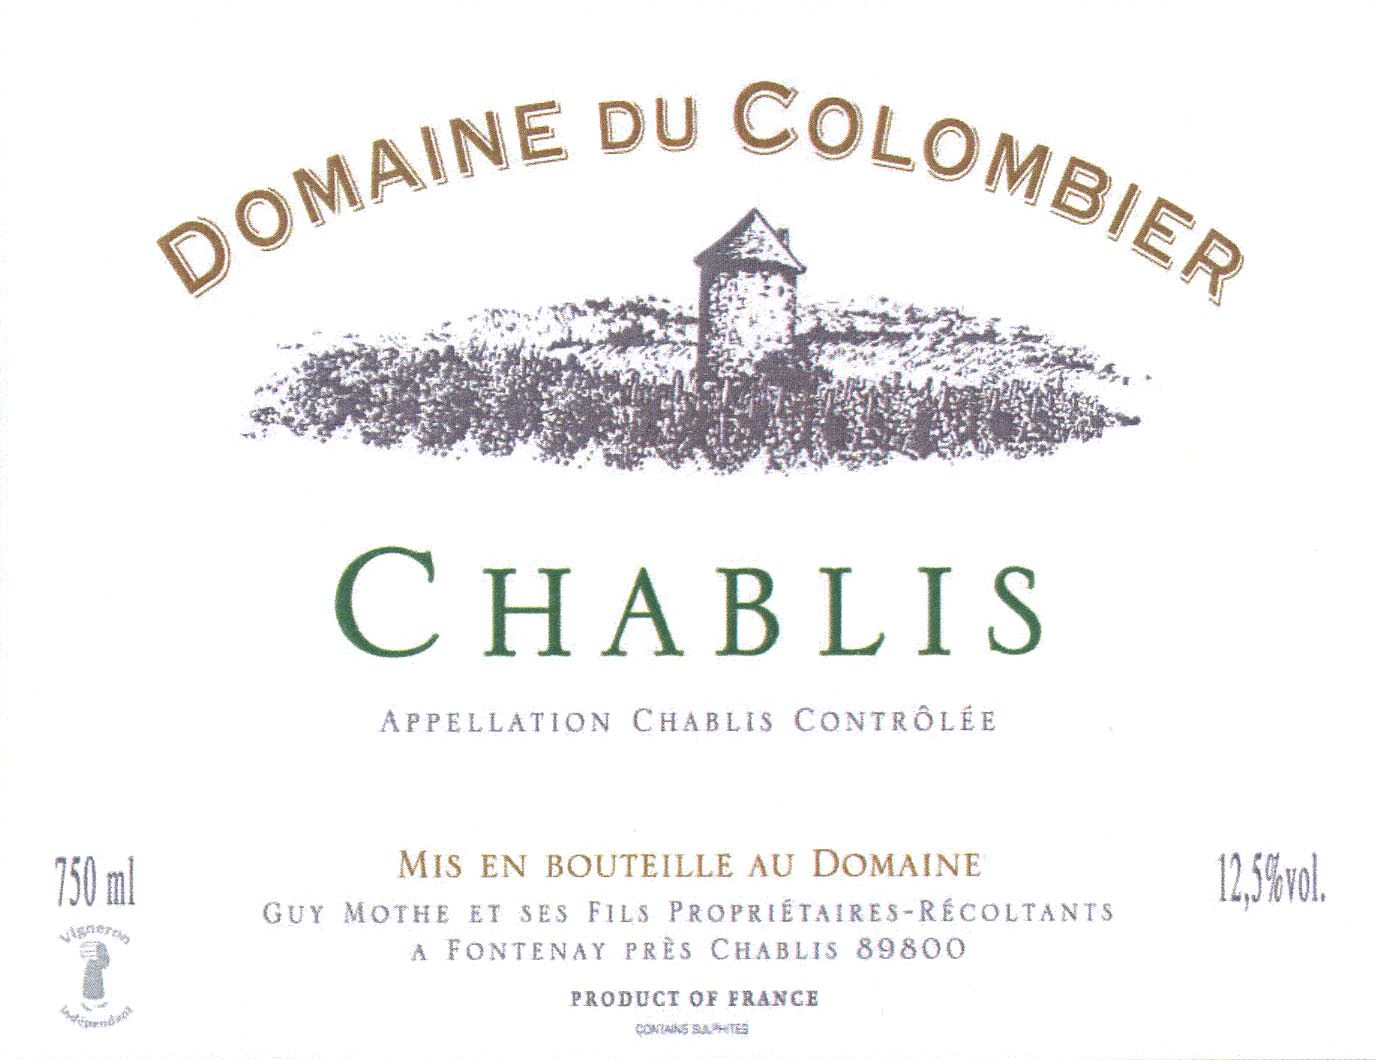 Domaine du Colombier - Chablis label